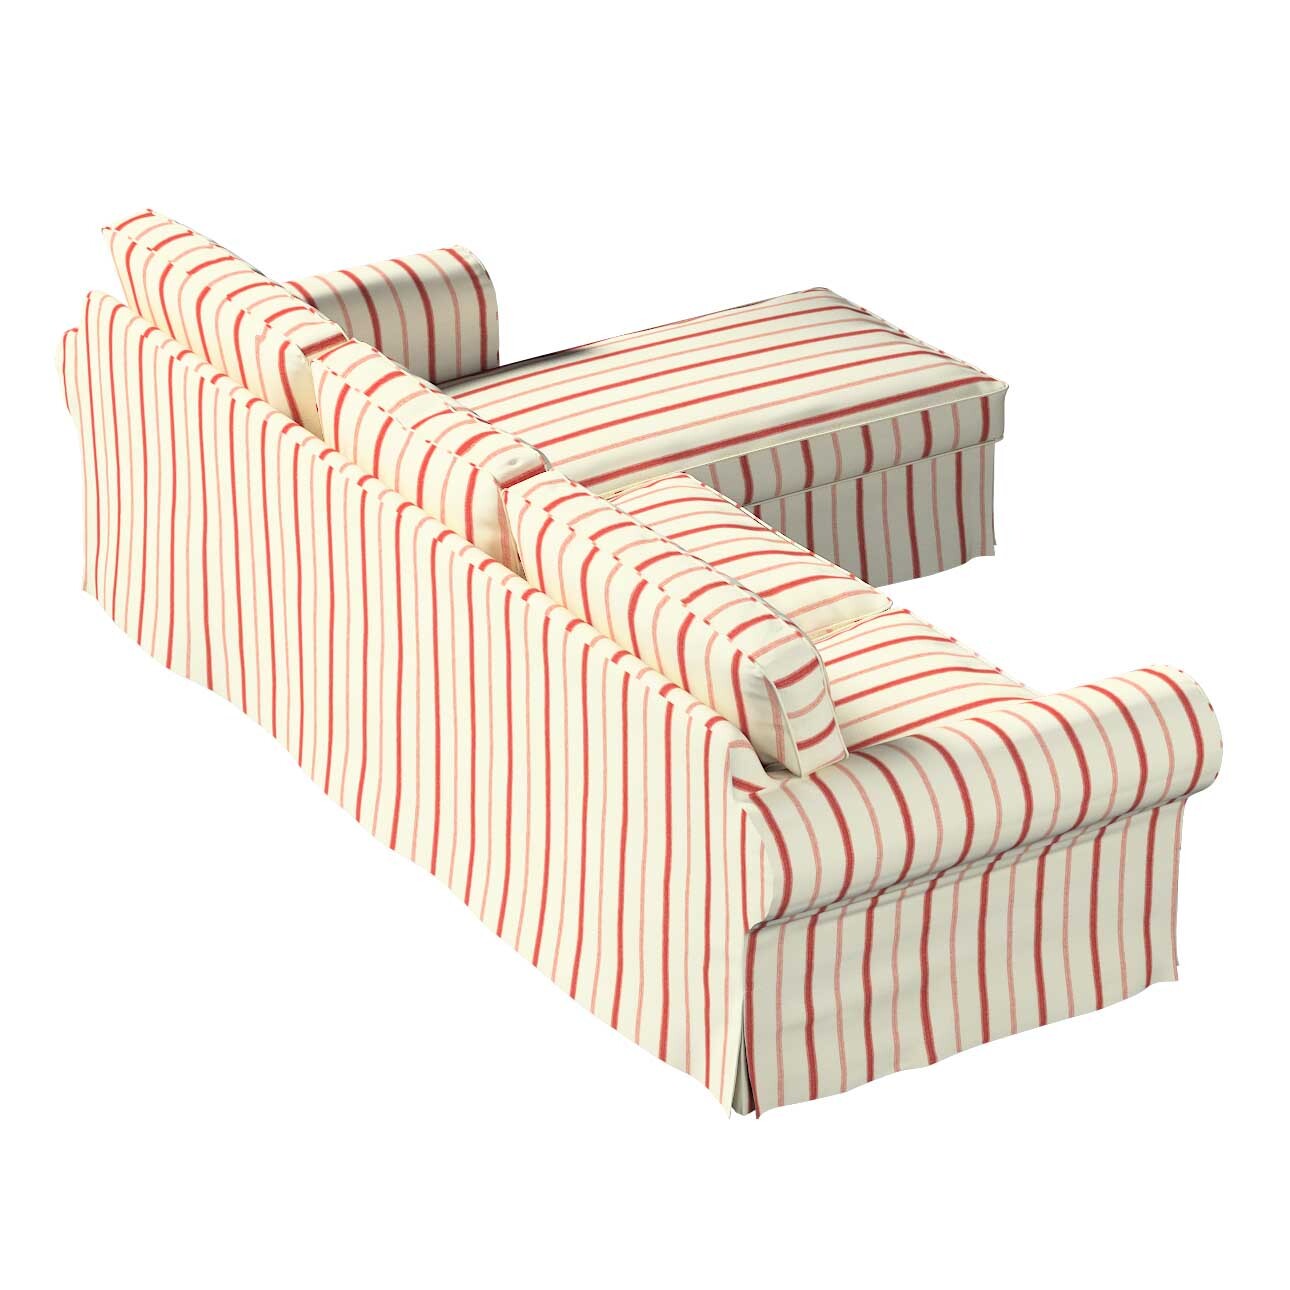 Bezug für Ektorp 2-Sitzer Sofa mit Recamiere, creme- rot gestreift, Ektorp günstig online kaufen